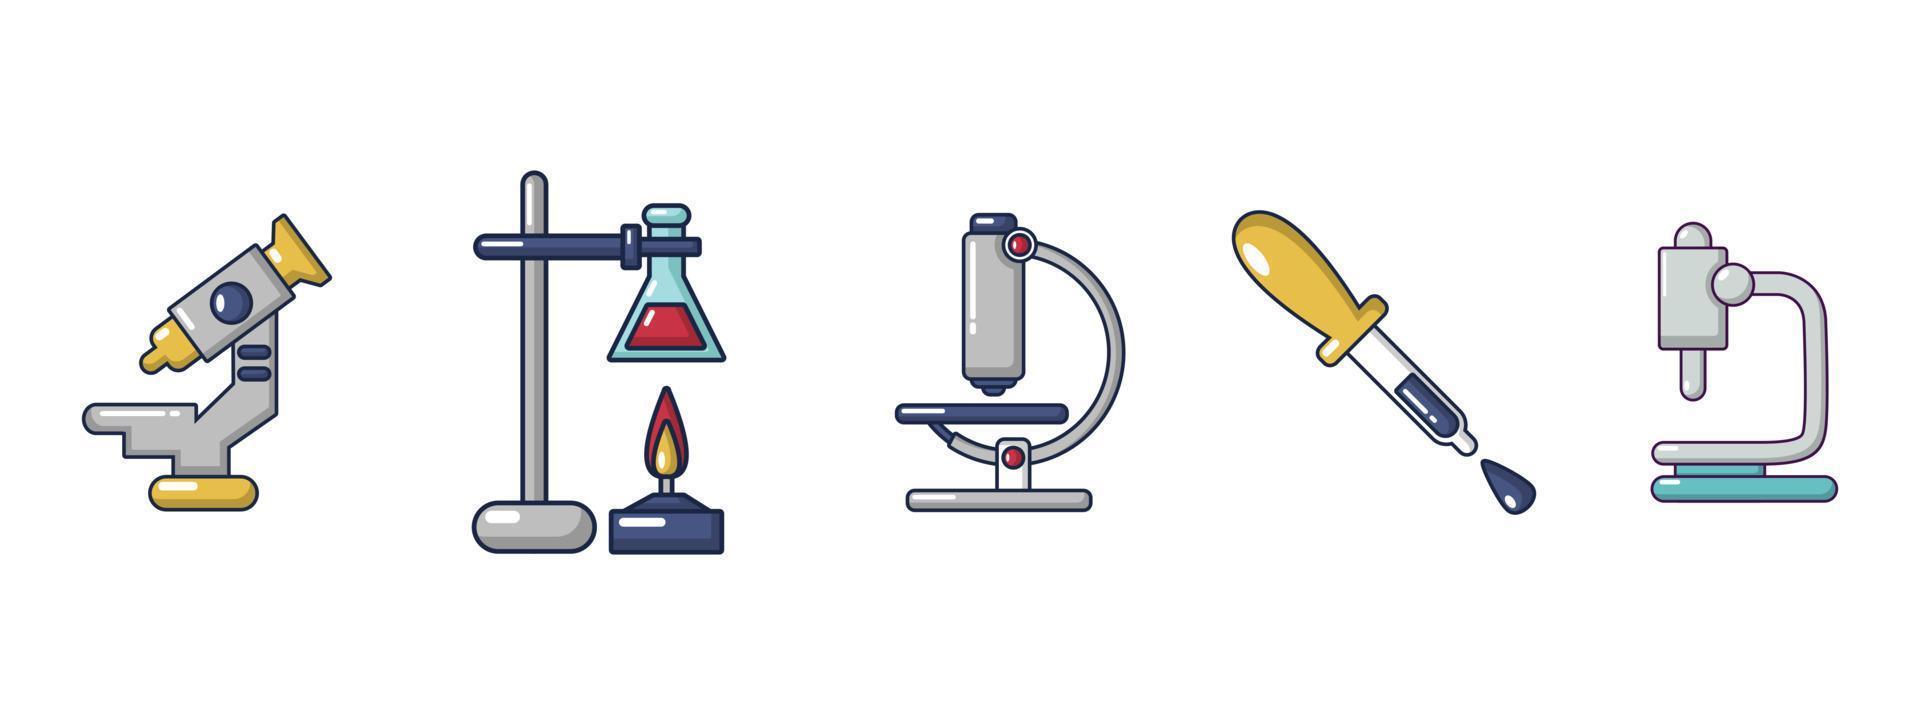 conjunto de iconos de herramientas químicas, estilo de dibujos animados vector